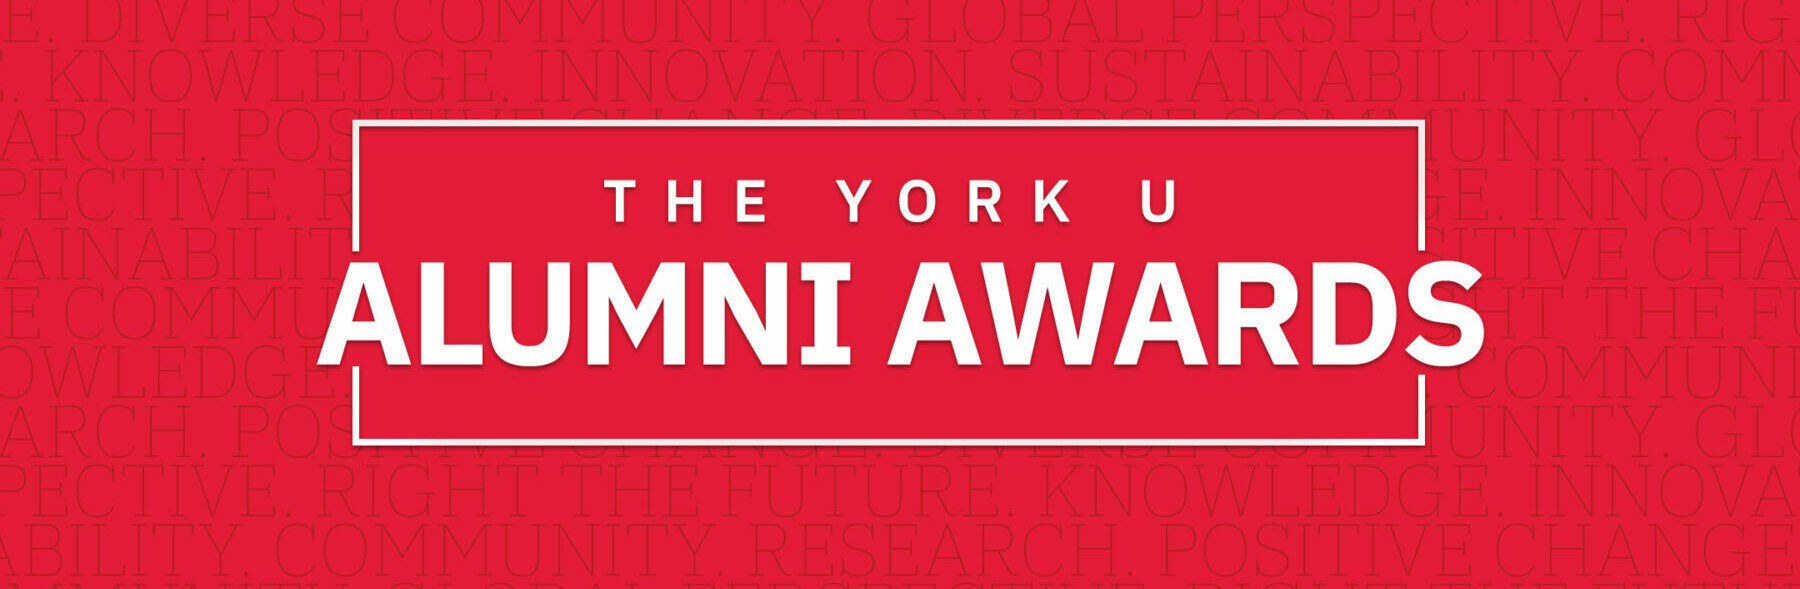 Wordmark for York U Alumni Awards